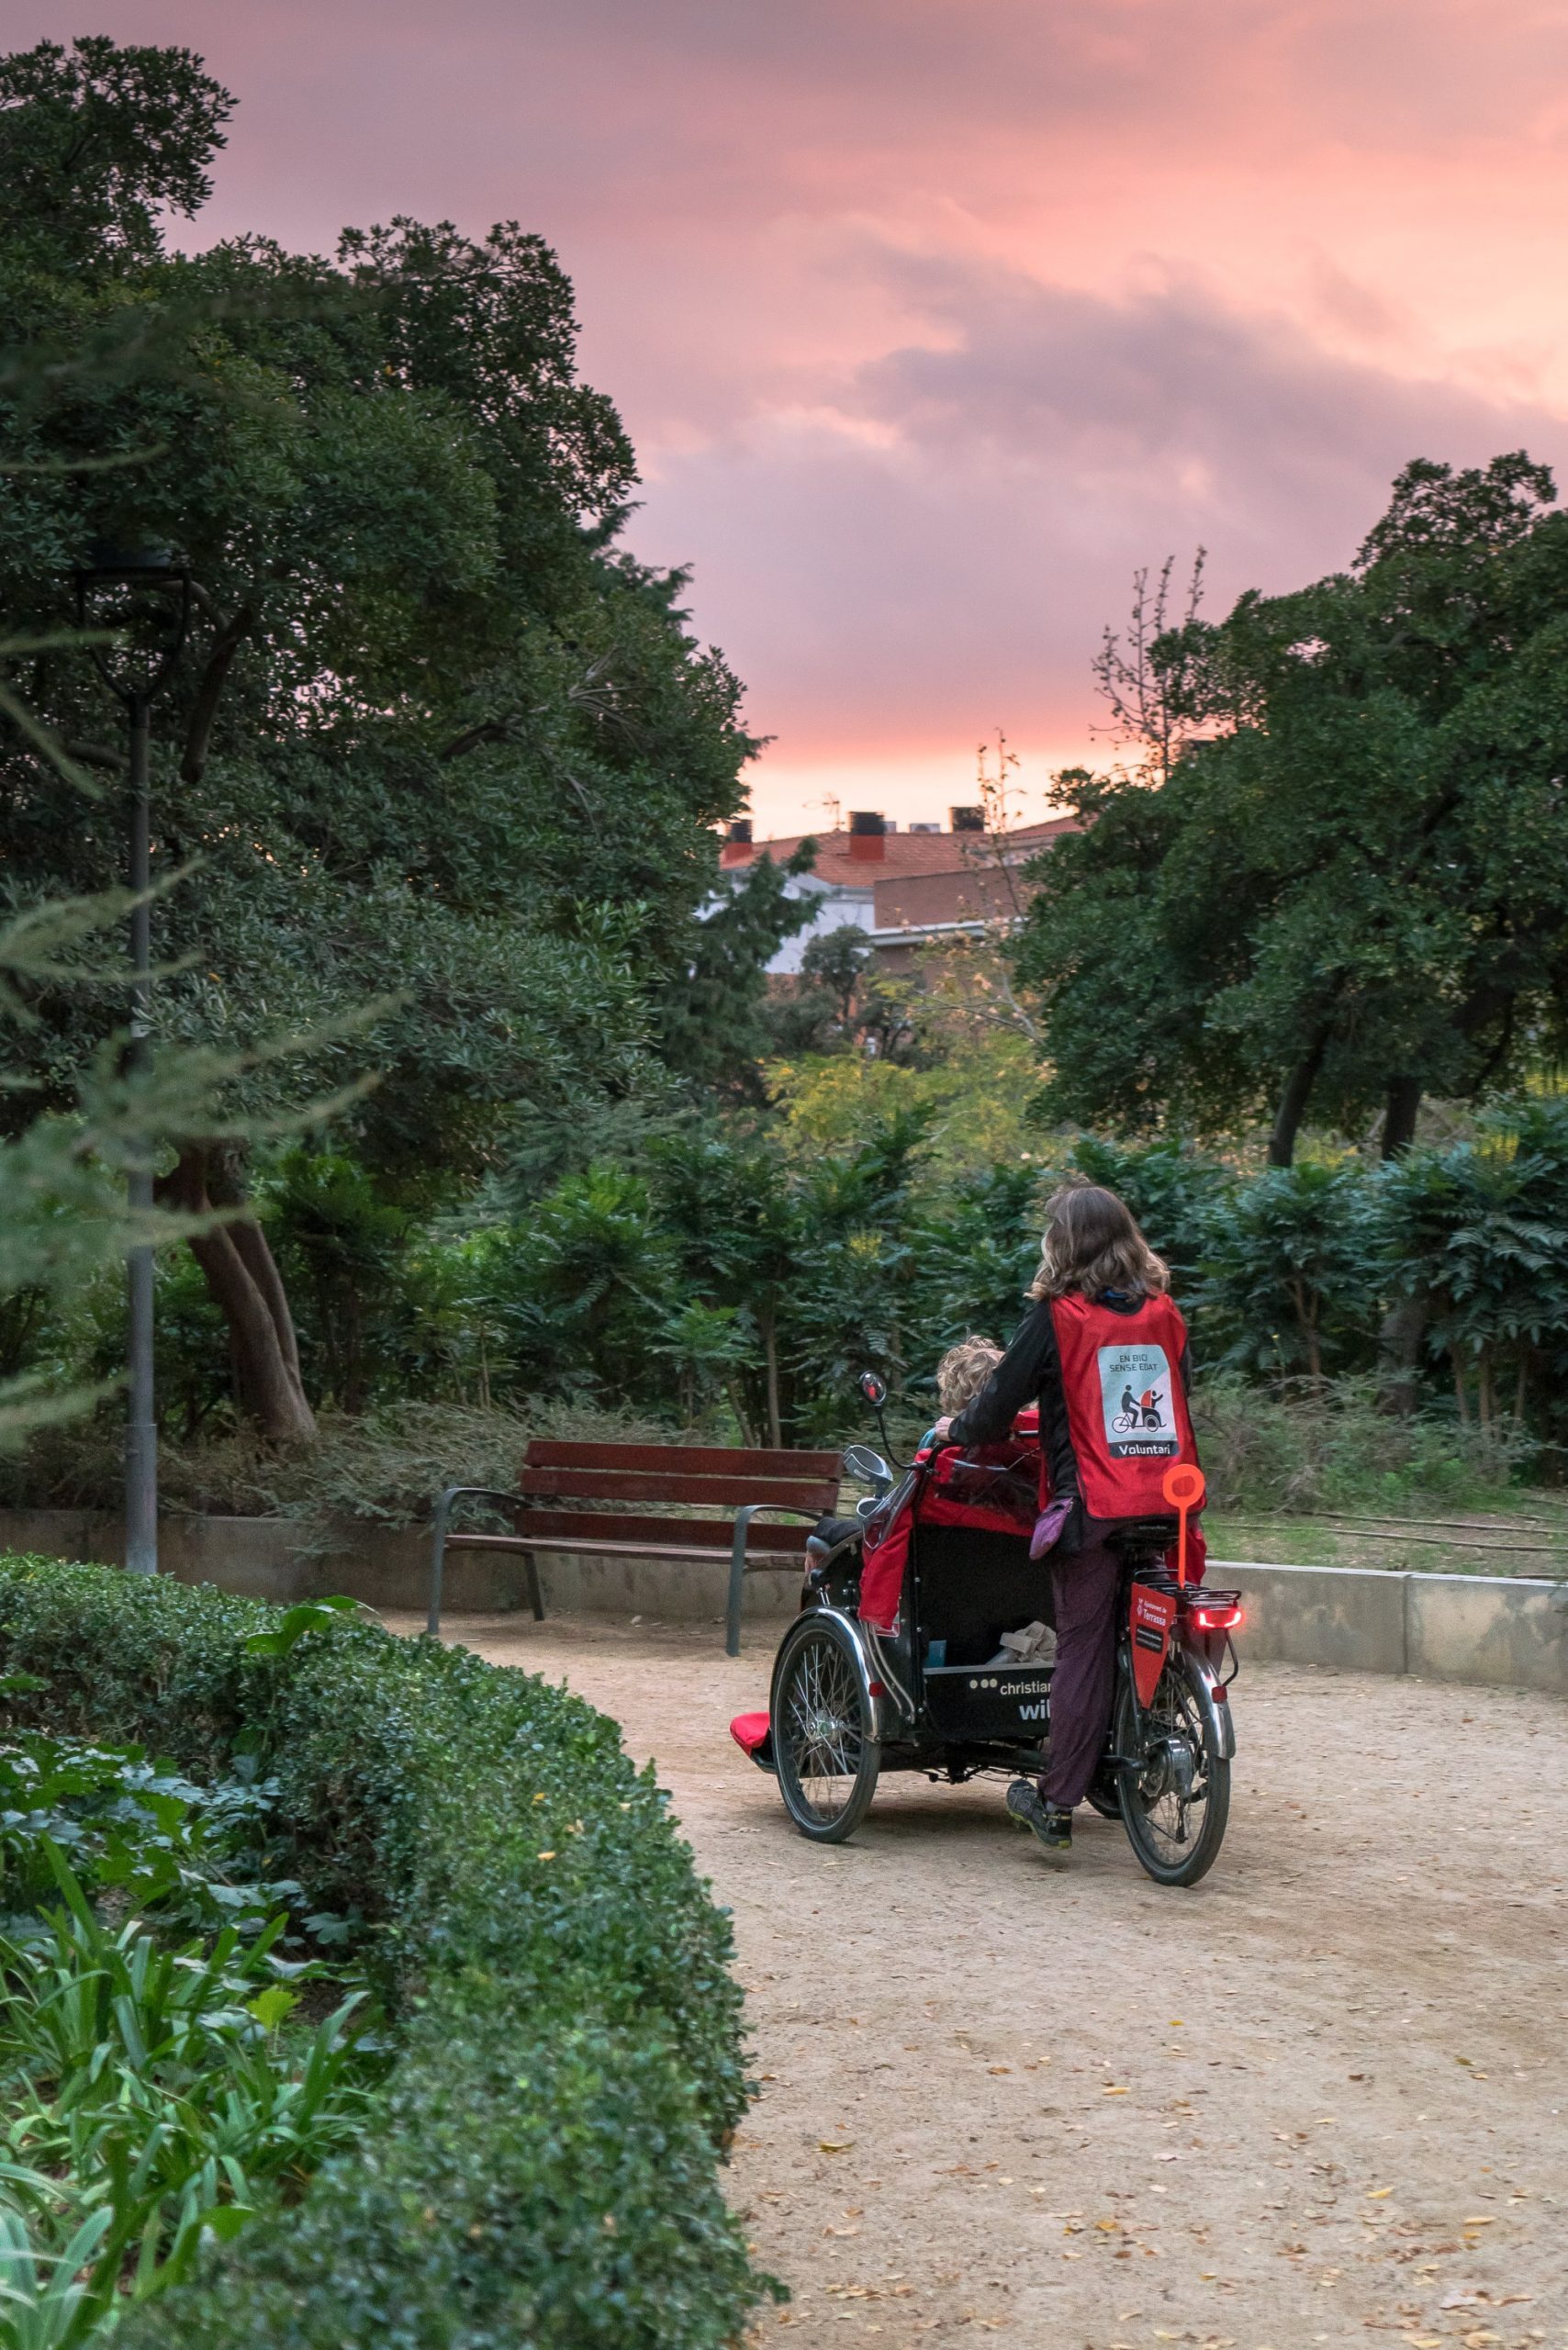 Una voluntària condueix un tricicle de Bici Sense Edat pel parc de Sant Jordi de Terrassa. És una imatge de Retícula, el banc d'imatges social i lliure.